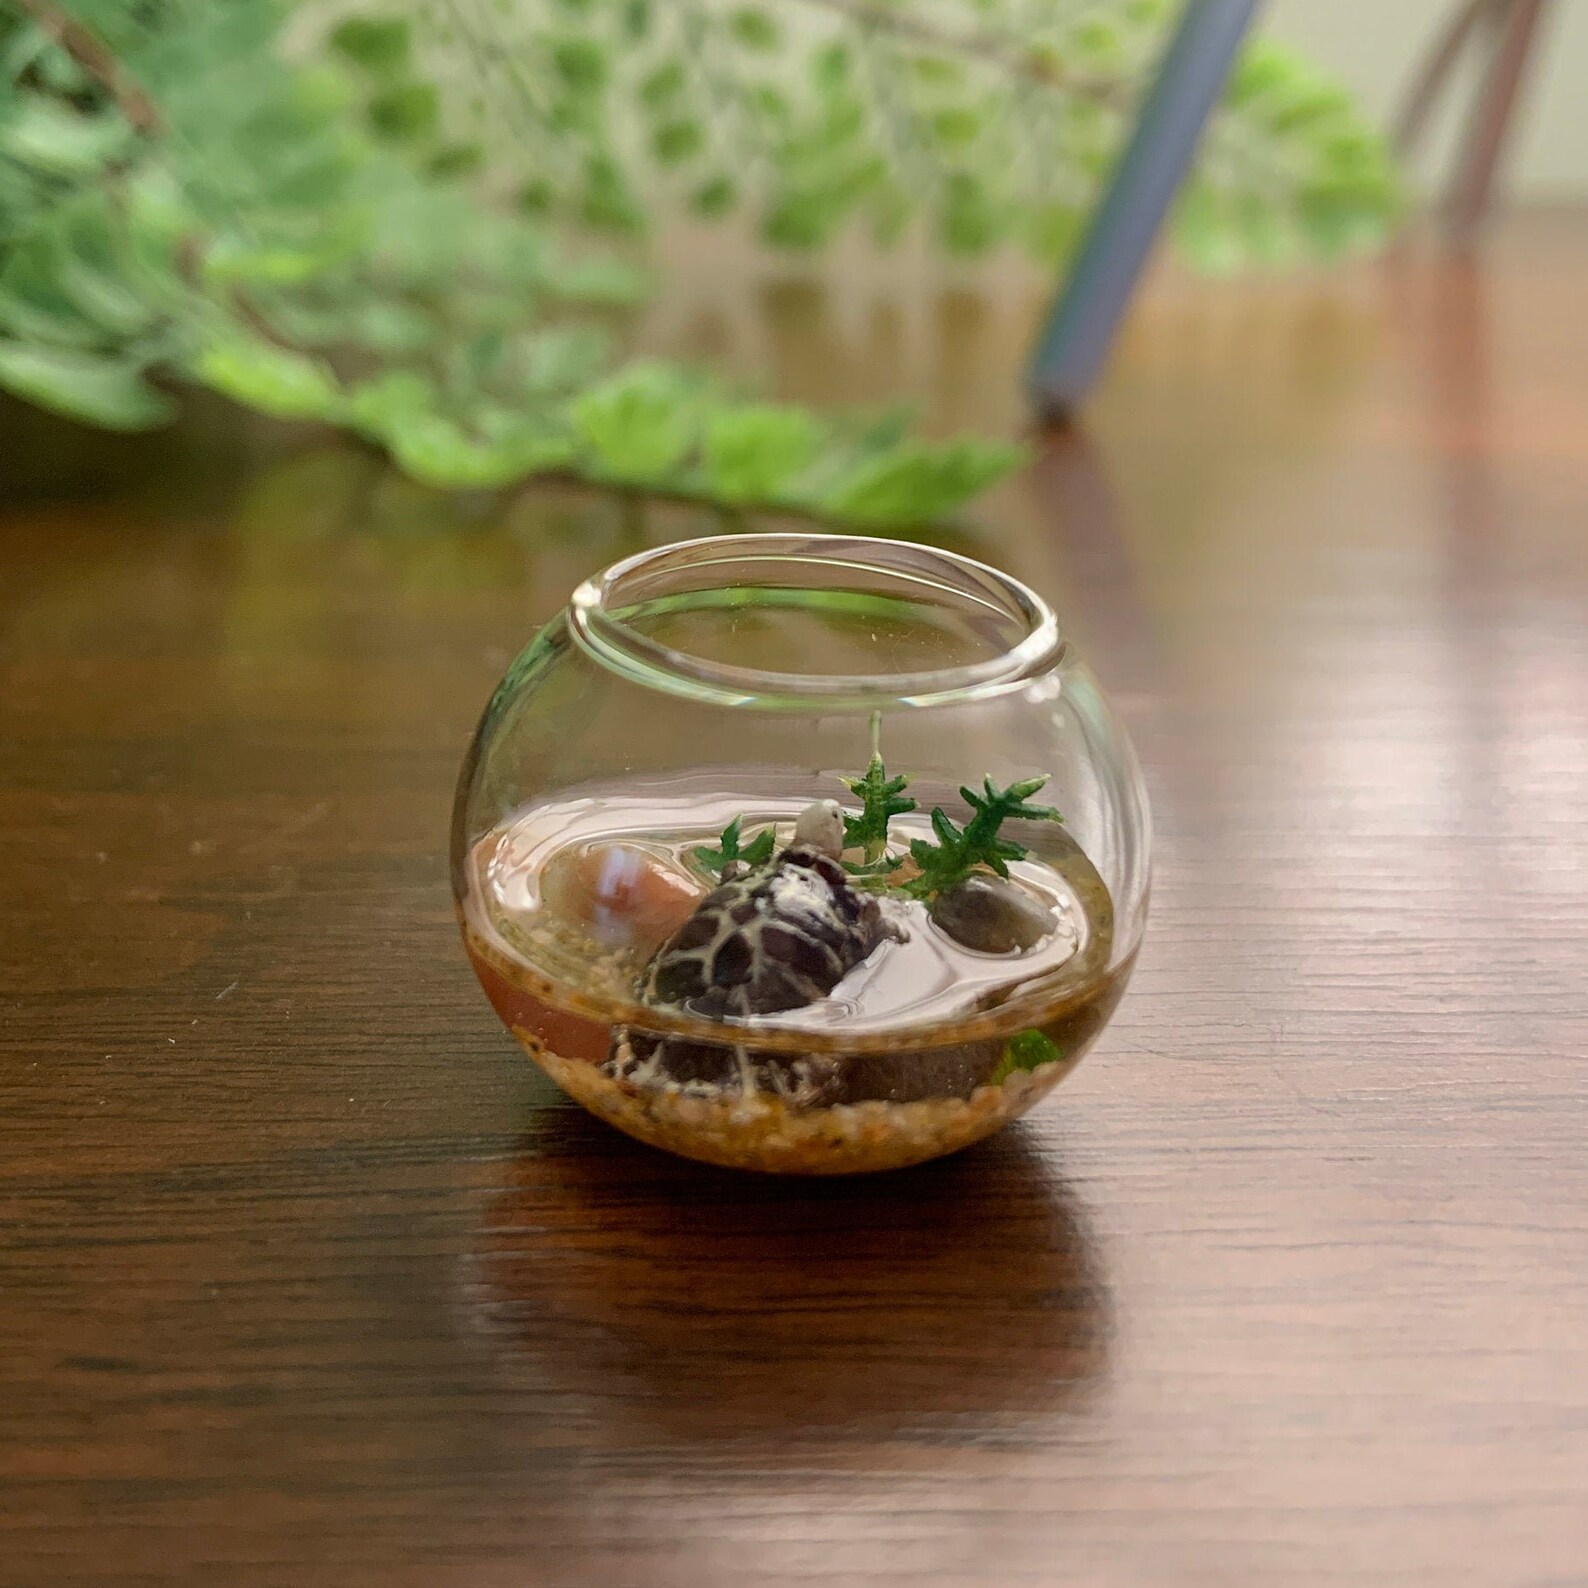 Miniature Turtle Bowl Miniature Fish Bowl | Etsy